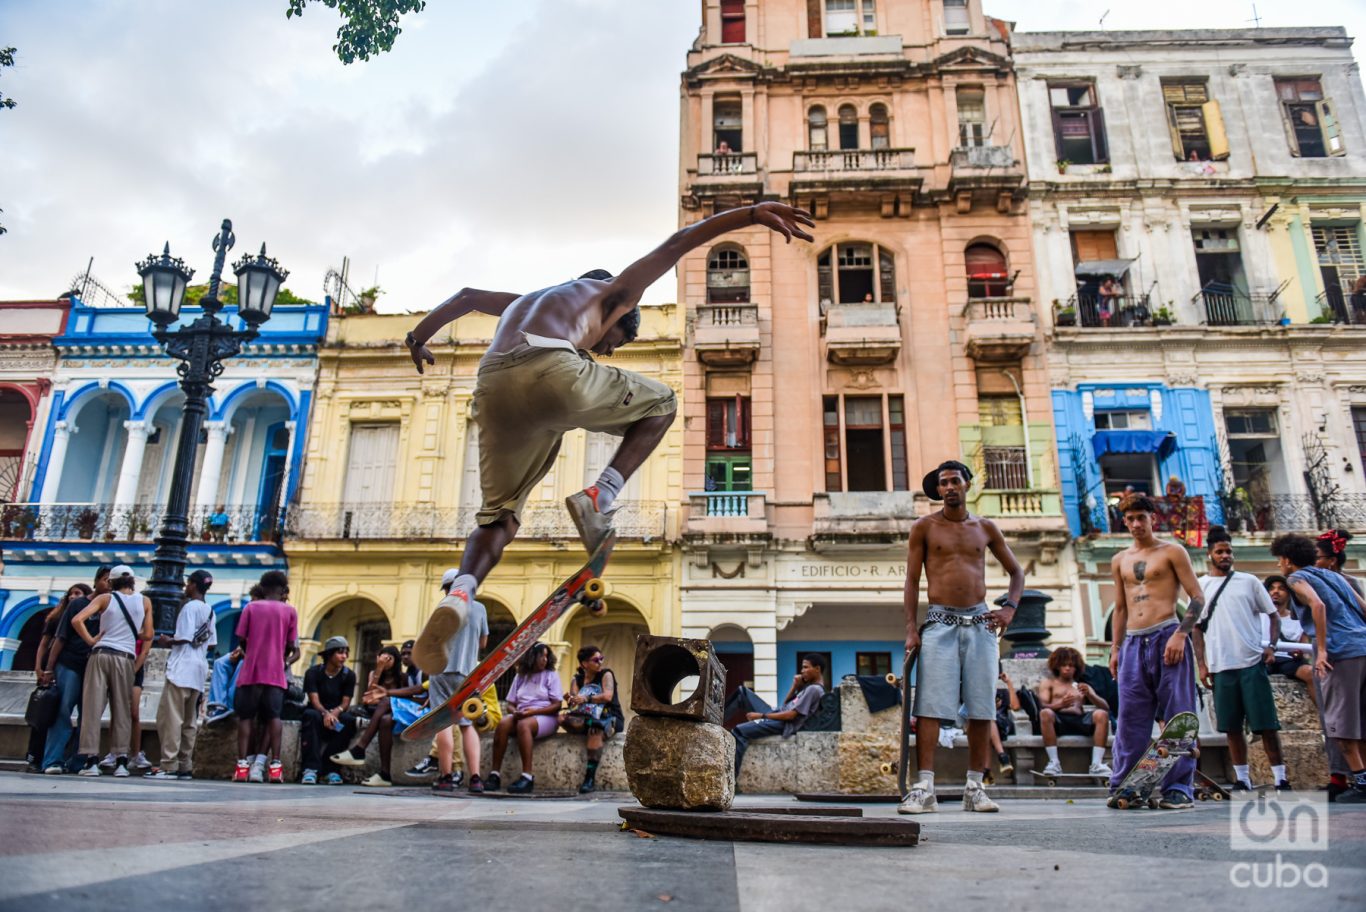 Un skater hace su performance en el Paseo del Prado. Foto: Kaloian.